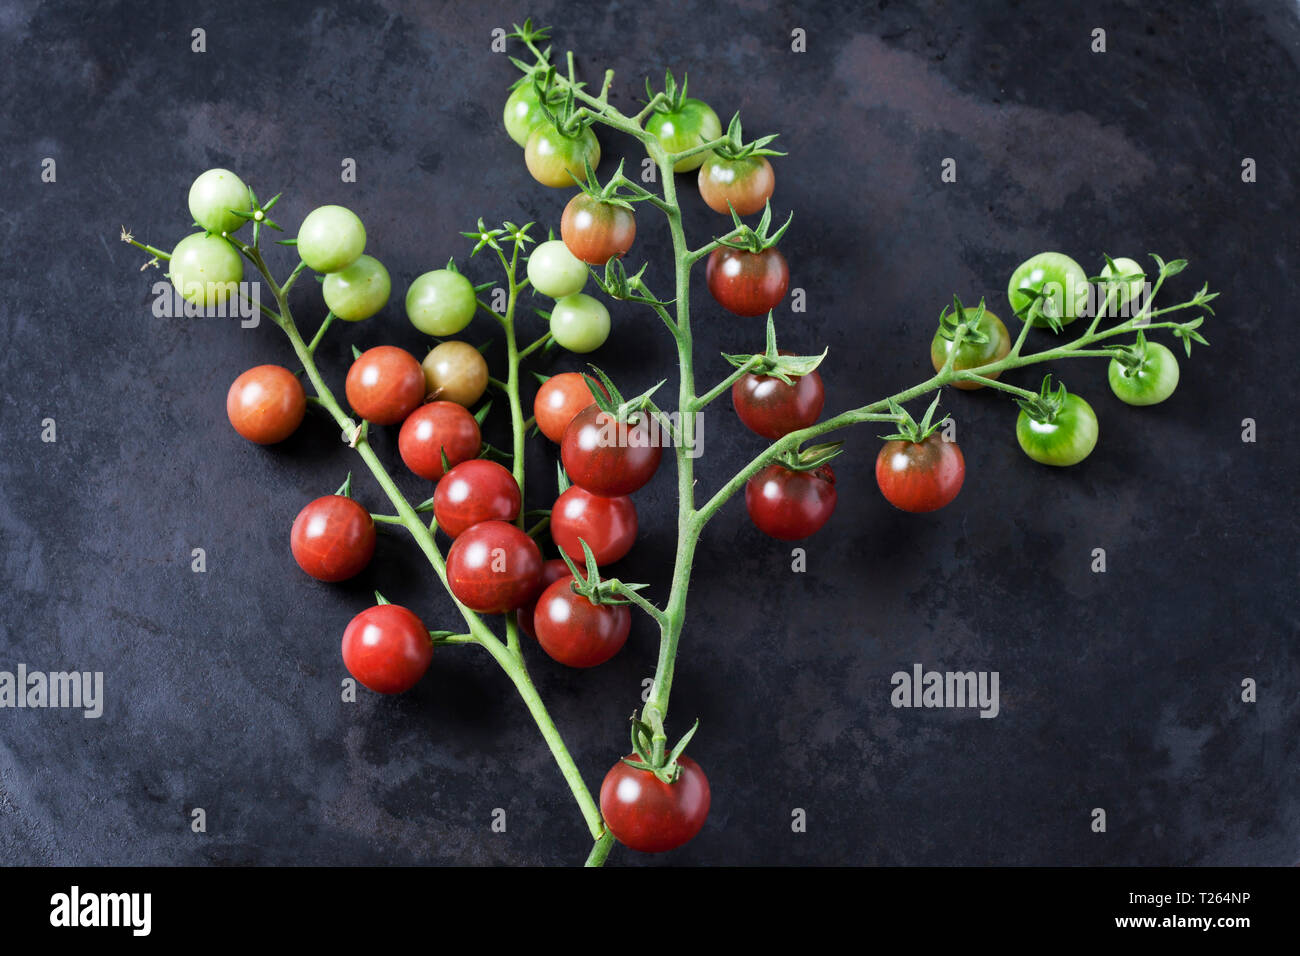 Risp tomatoes 'Black Cherry' on dark ground Stock Photo